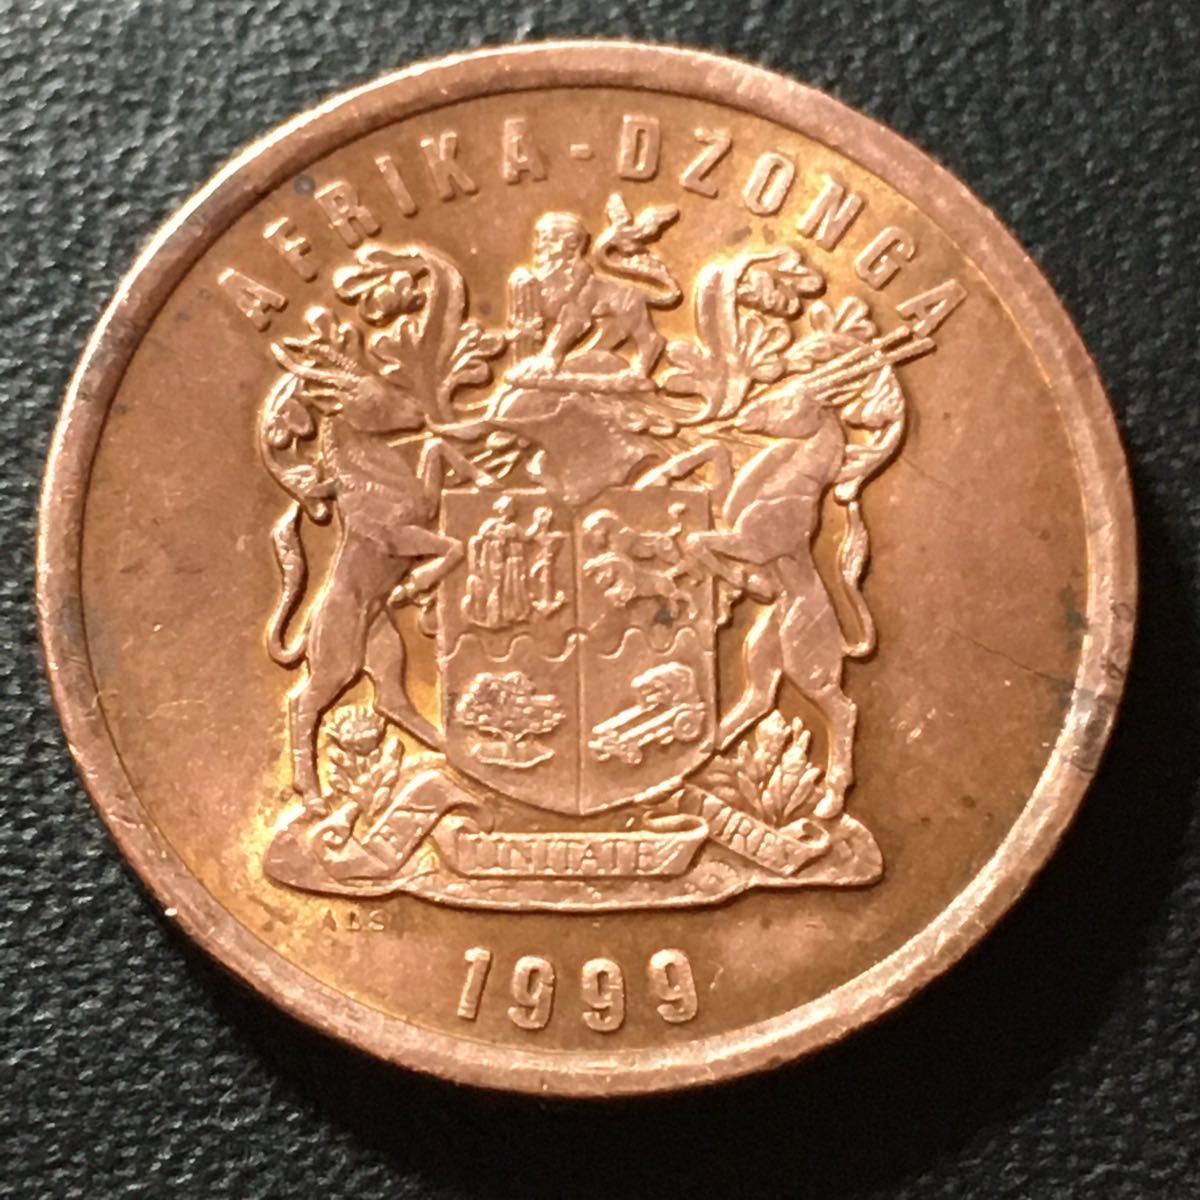 【p080】古銭外国銭 南アフリカ共和国5セントコイン 1999年(^ ^)_画像2